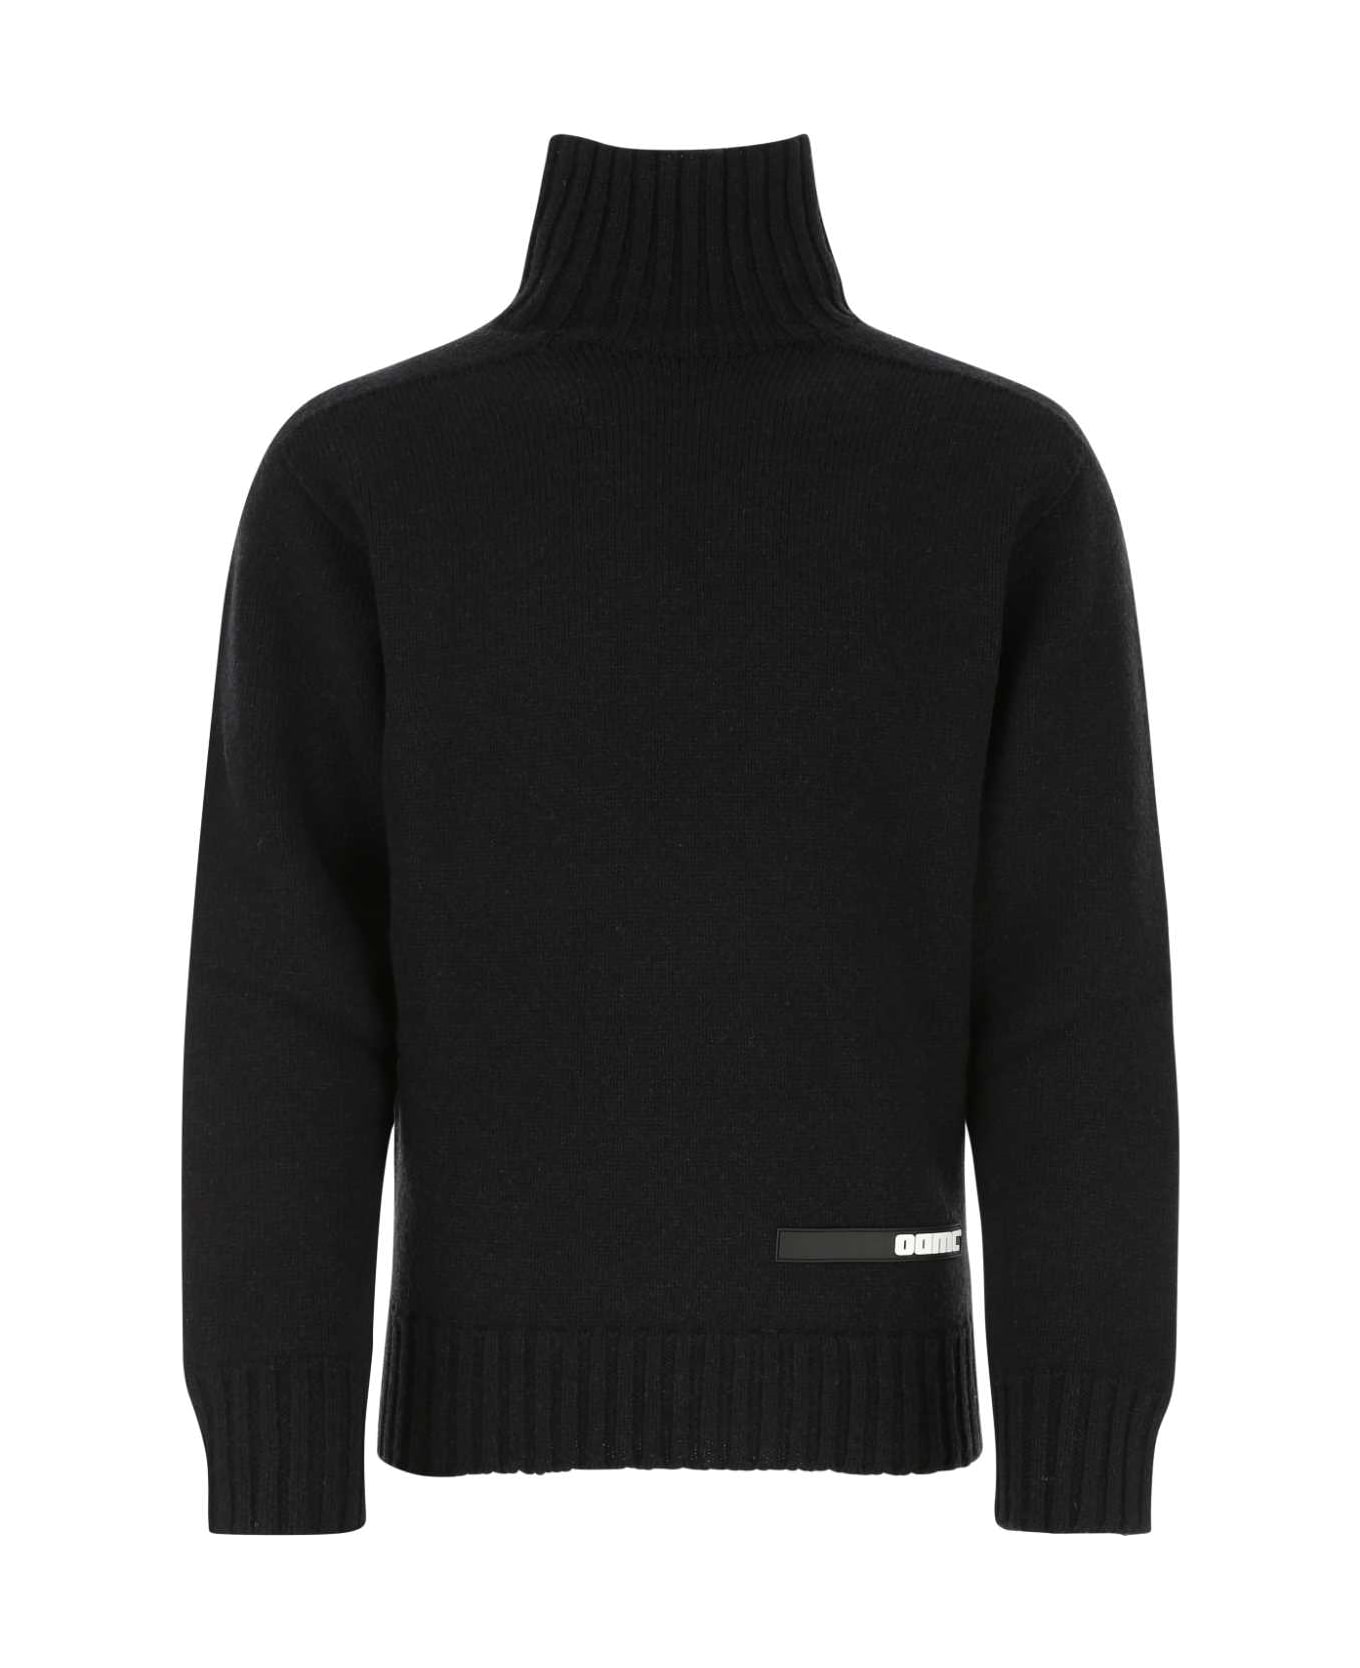 OAMC Black Wool Sweater - 001